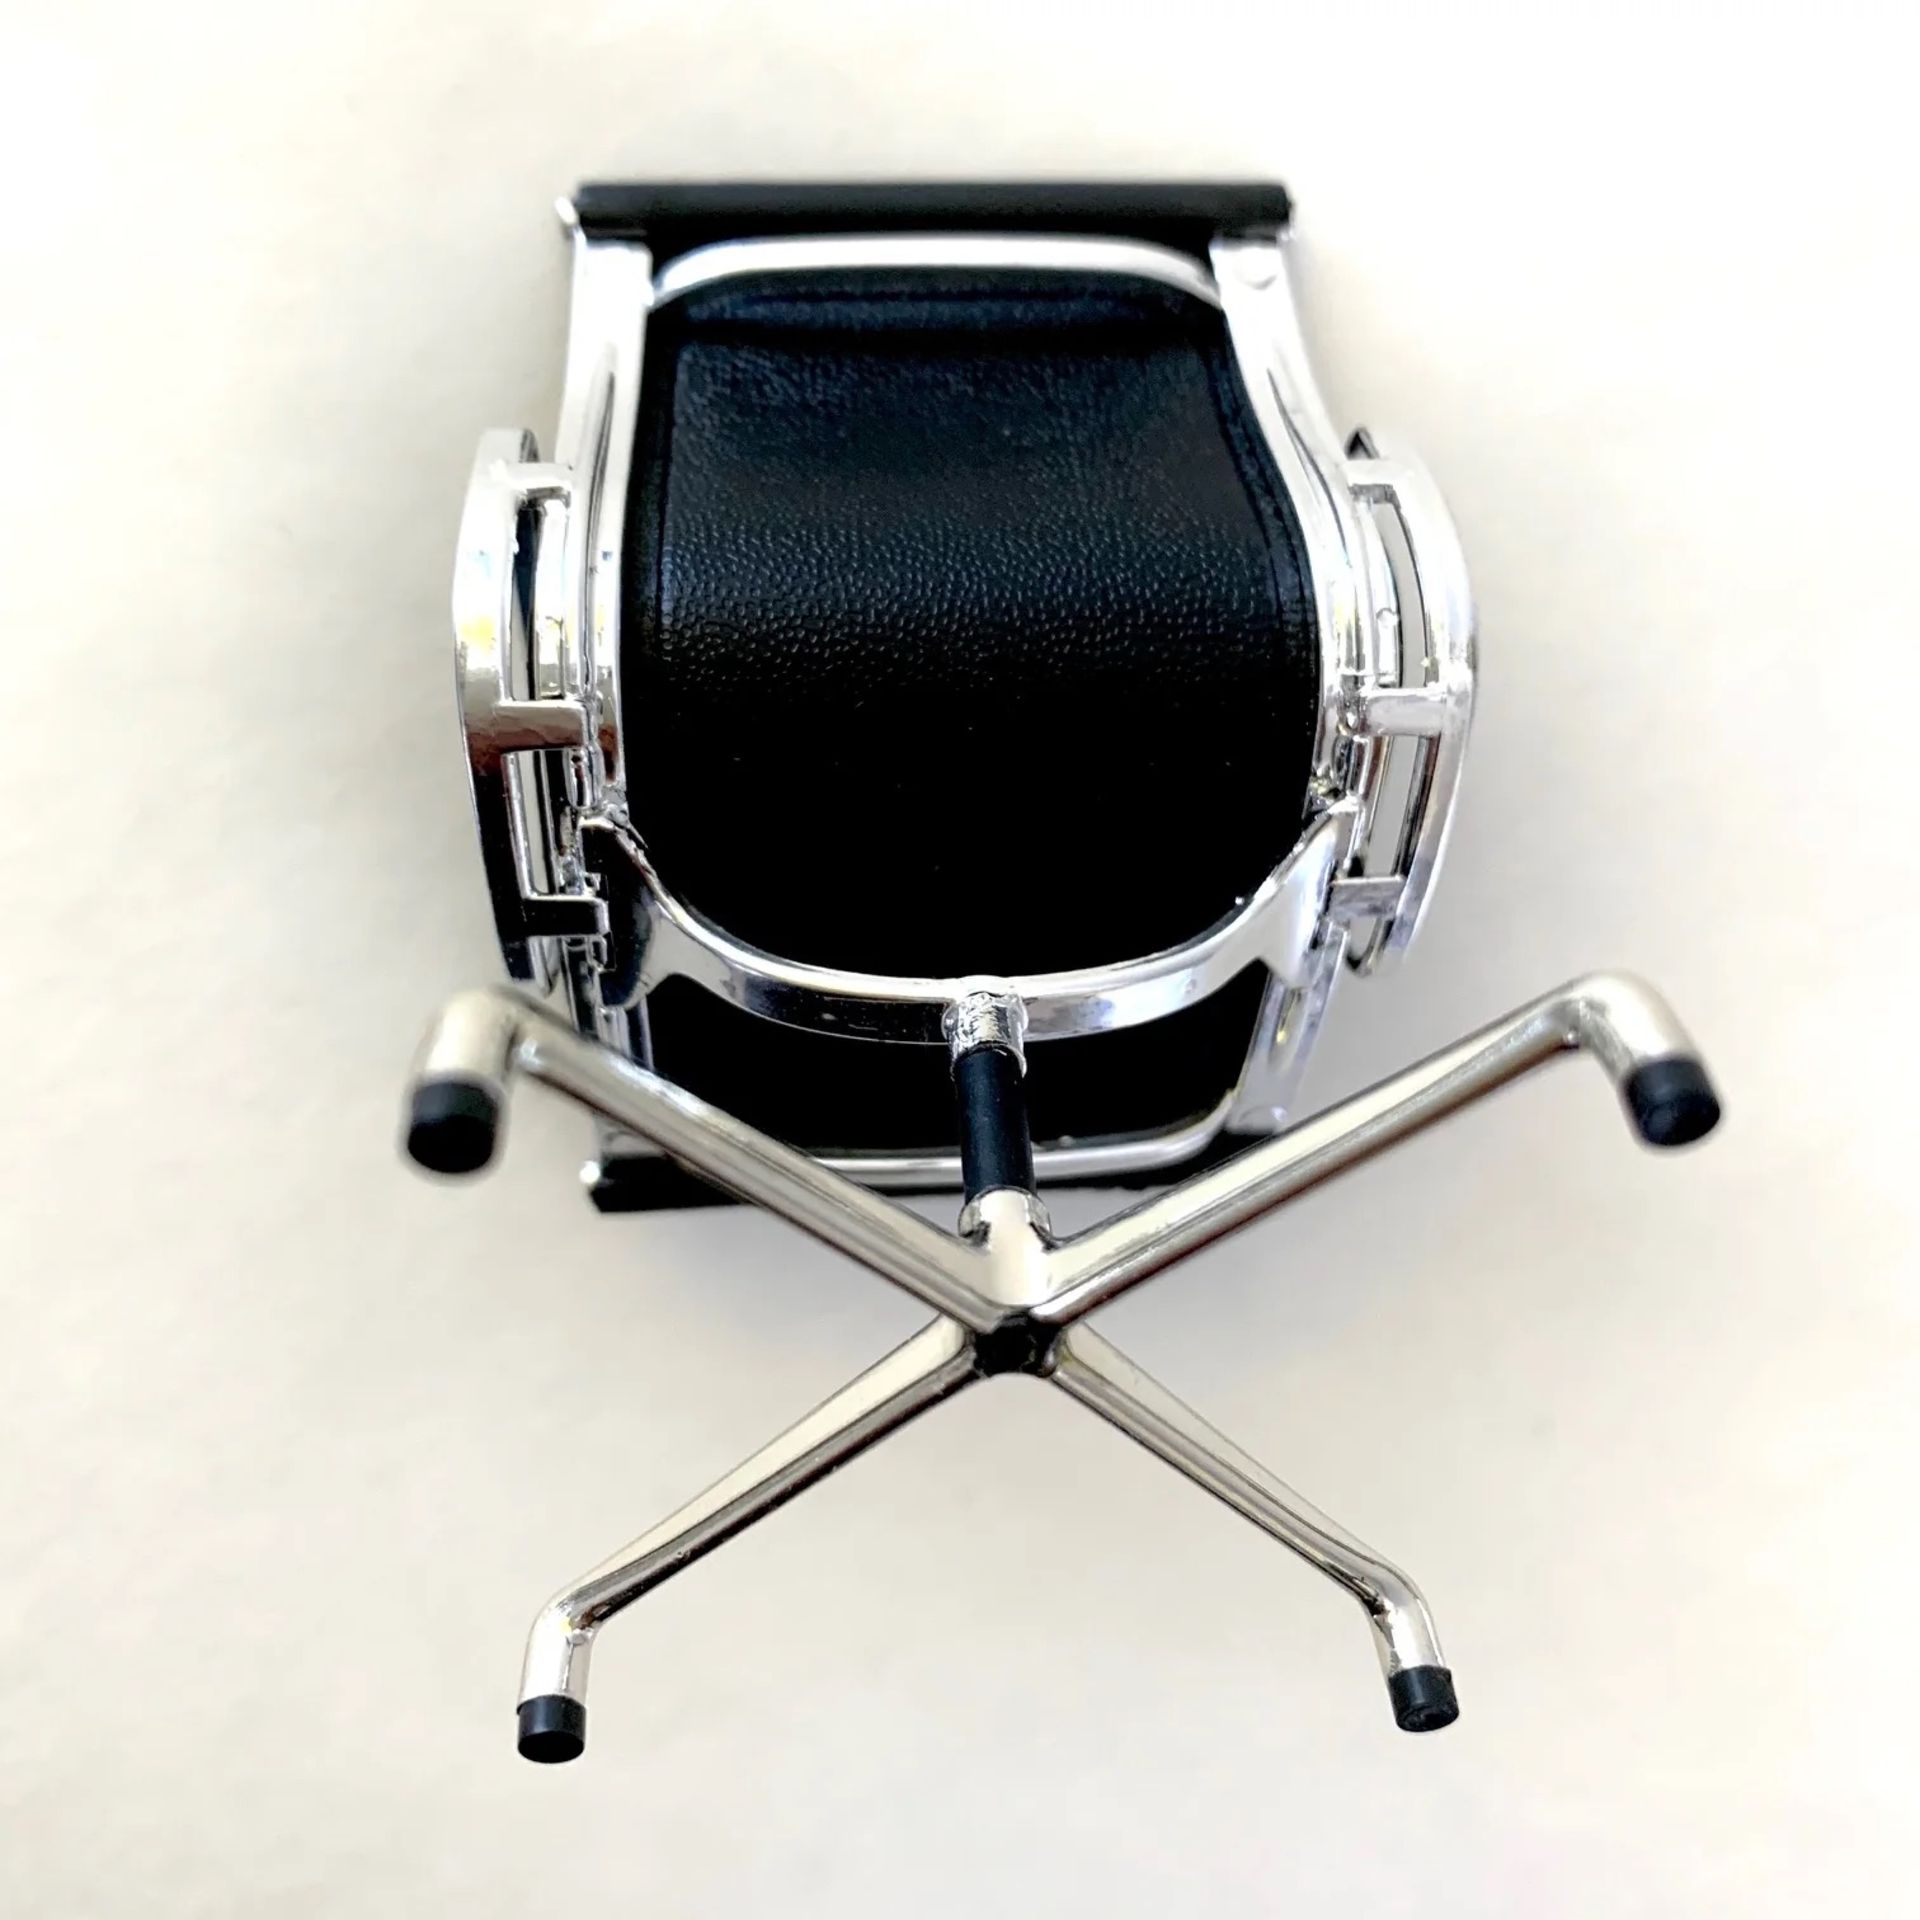 Eames Black Desk Chair Desk Display - Image 2 of 2